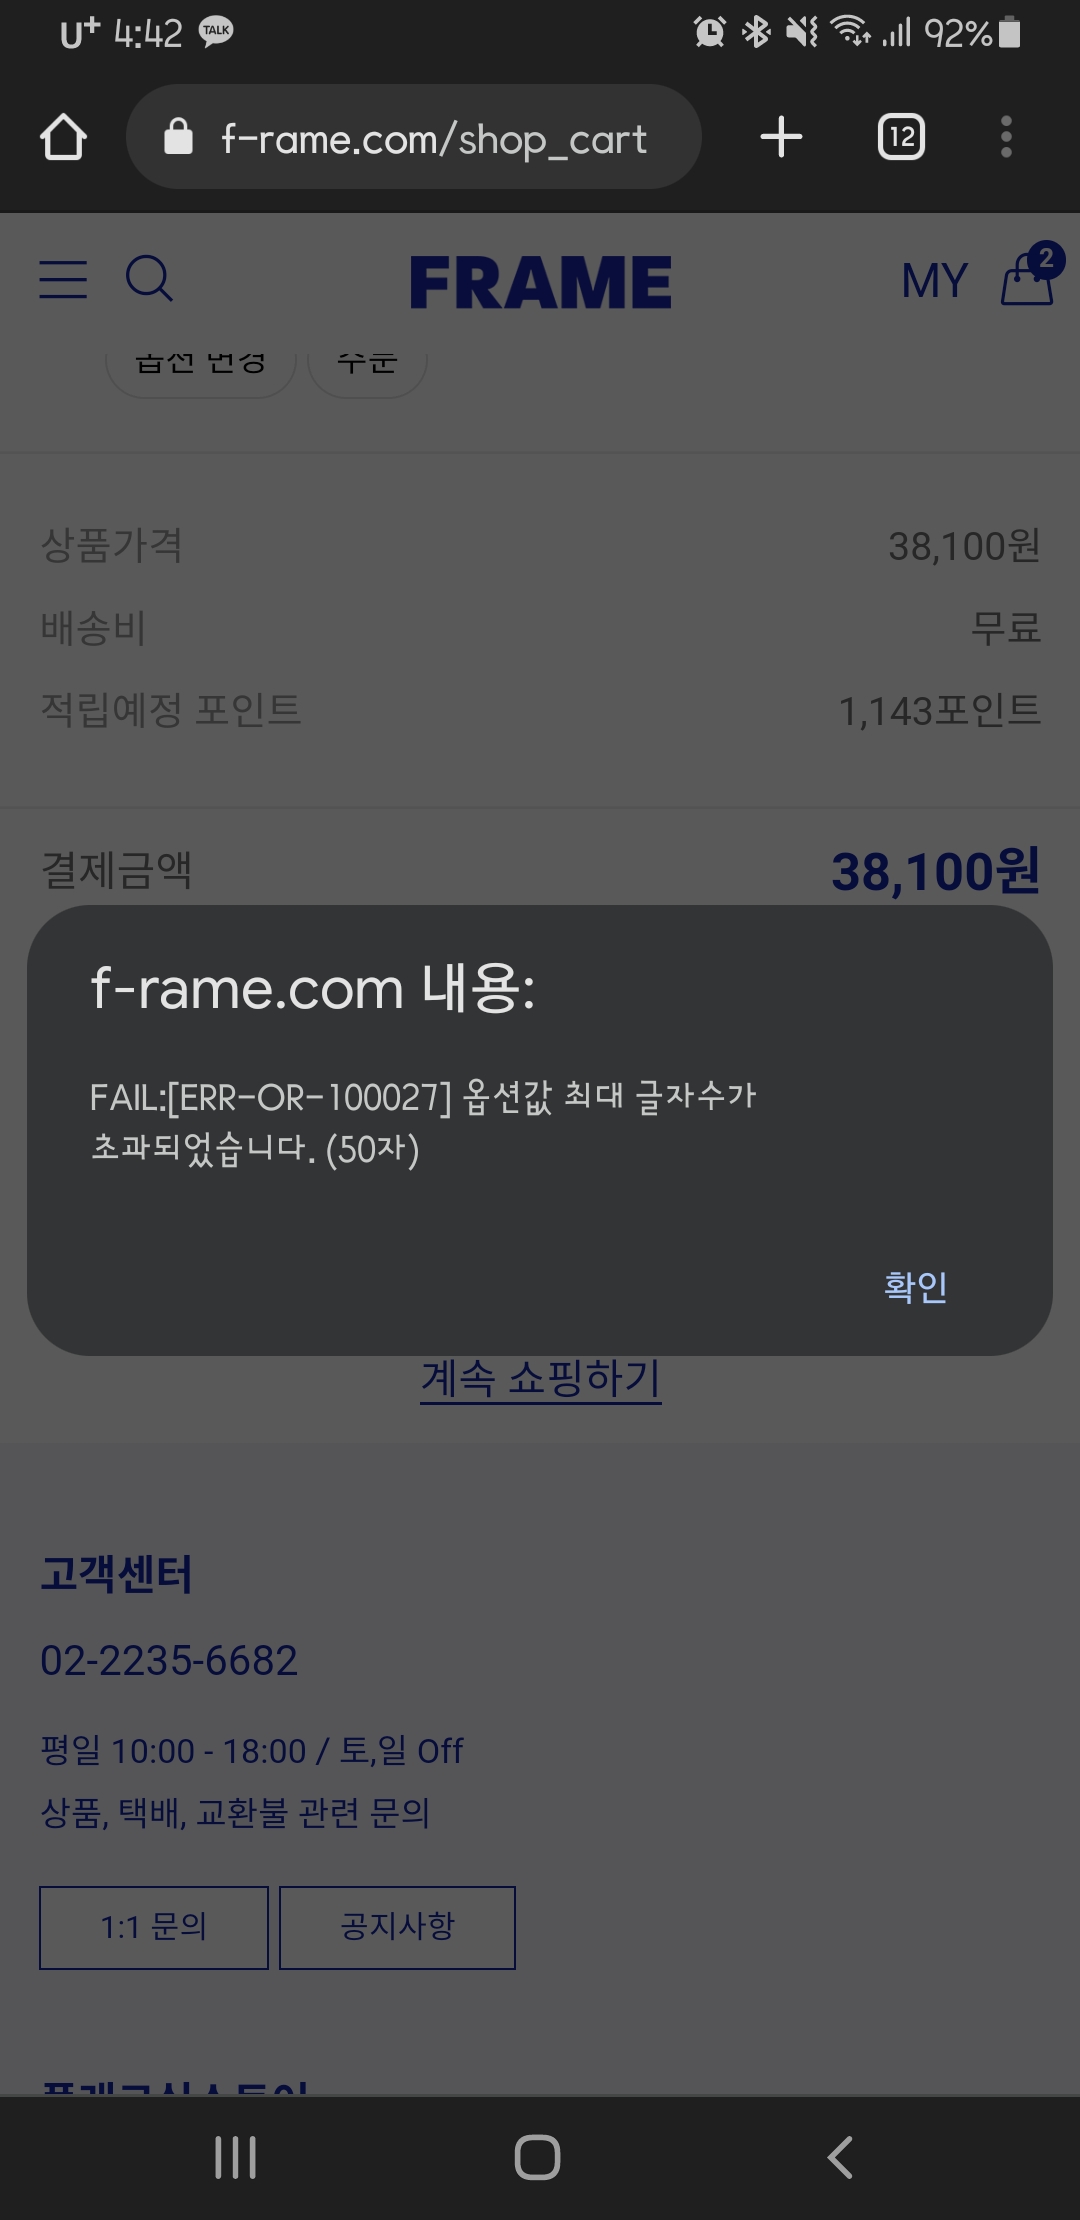 각인서비스 옵션에 영어로 Hyu 3글자밖에 안썼는데 50자 초과래요. 각인까지 하고싶은데 주문 어떻게 해야하죠? : Frame